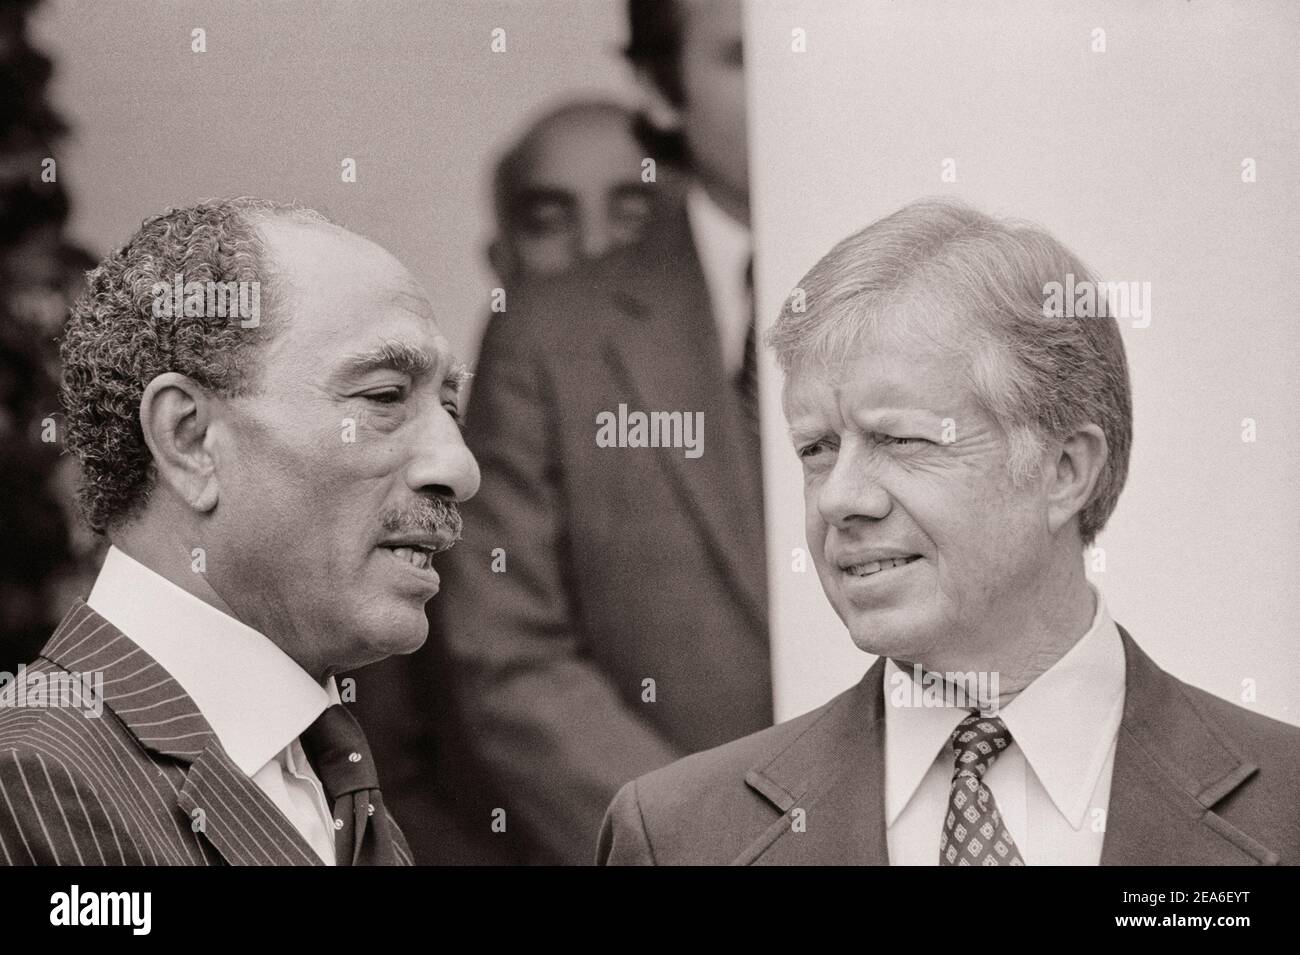 Le président Jimmy carter accueille le président égyptien Anwar Sadat à la Maison Blanche, Washington, D.C., aux États-Unis. 8 avril 1980 Banque D'Images